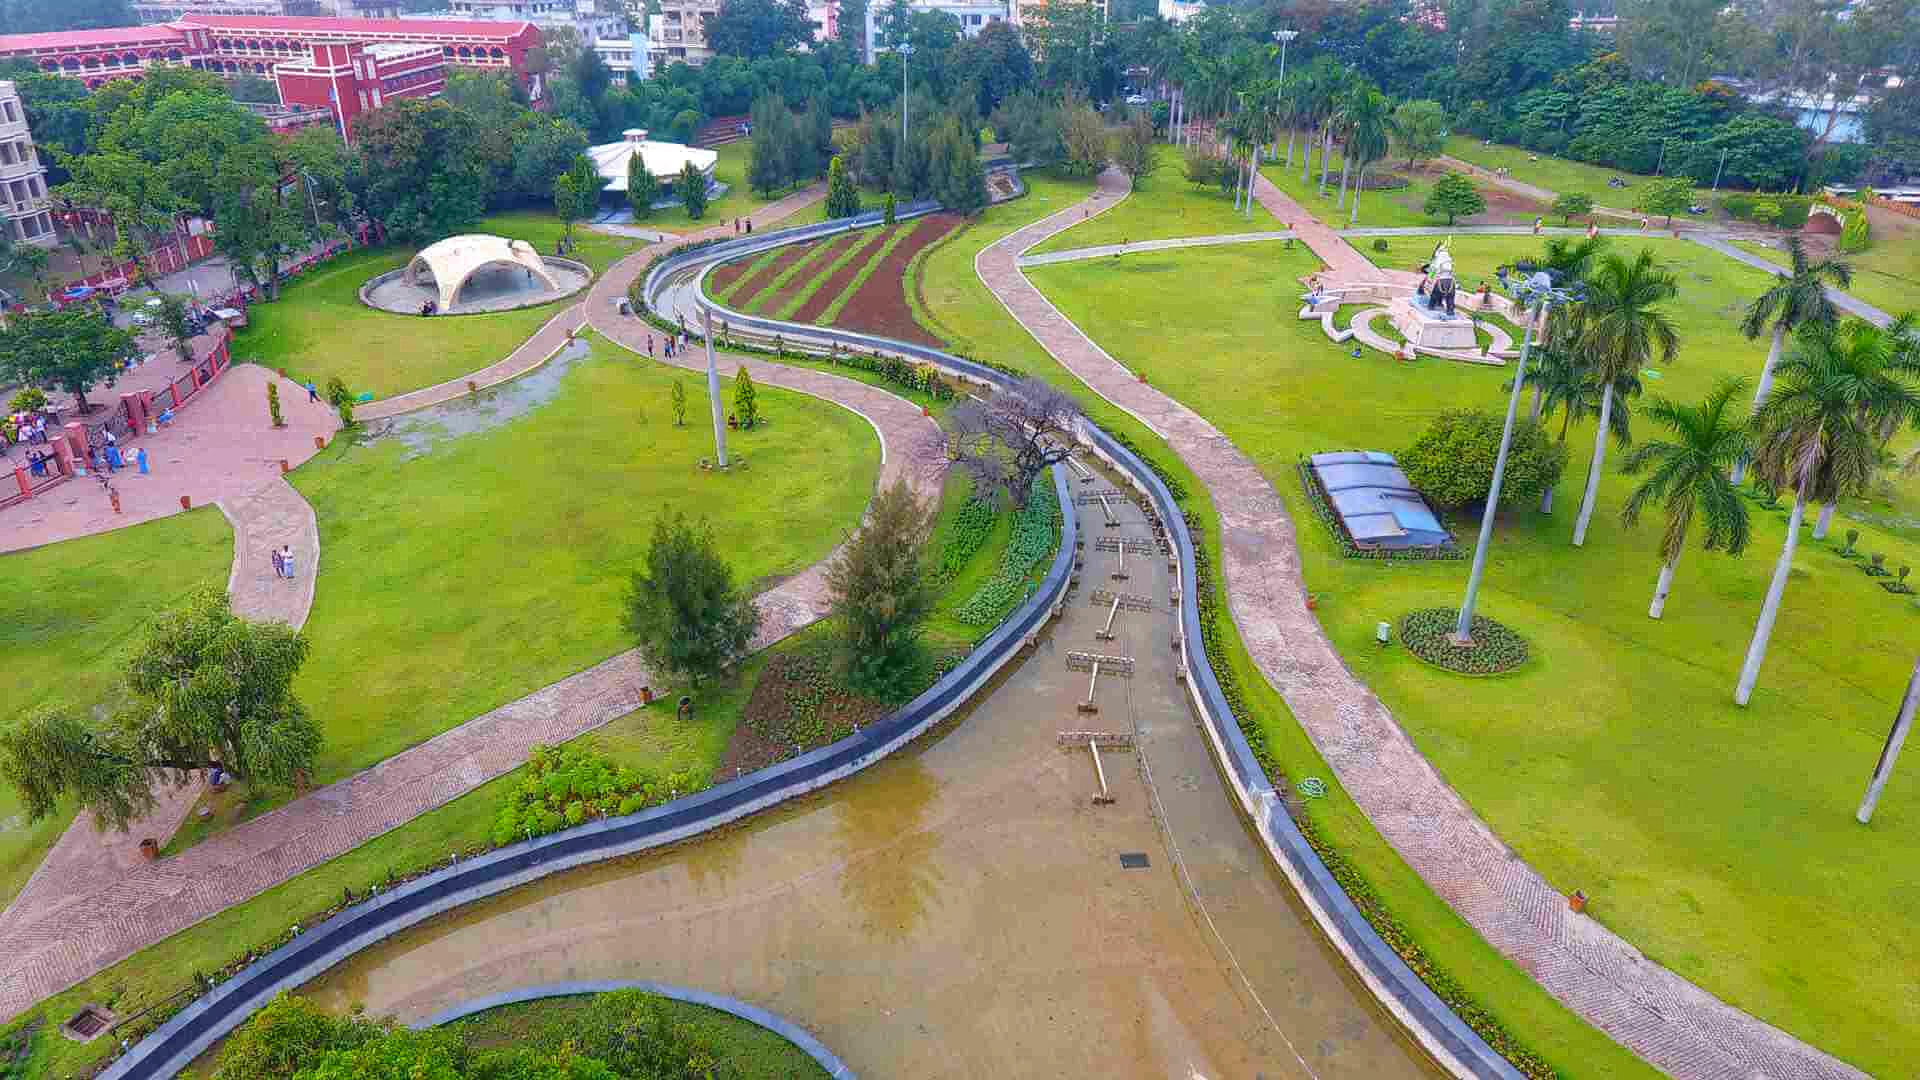 Bhawartal Garden Overview